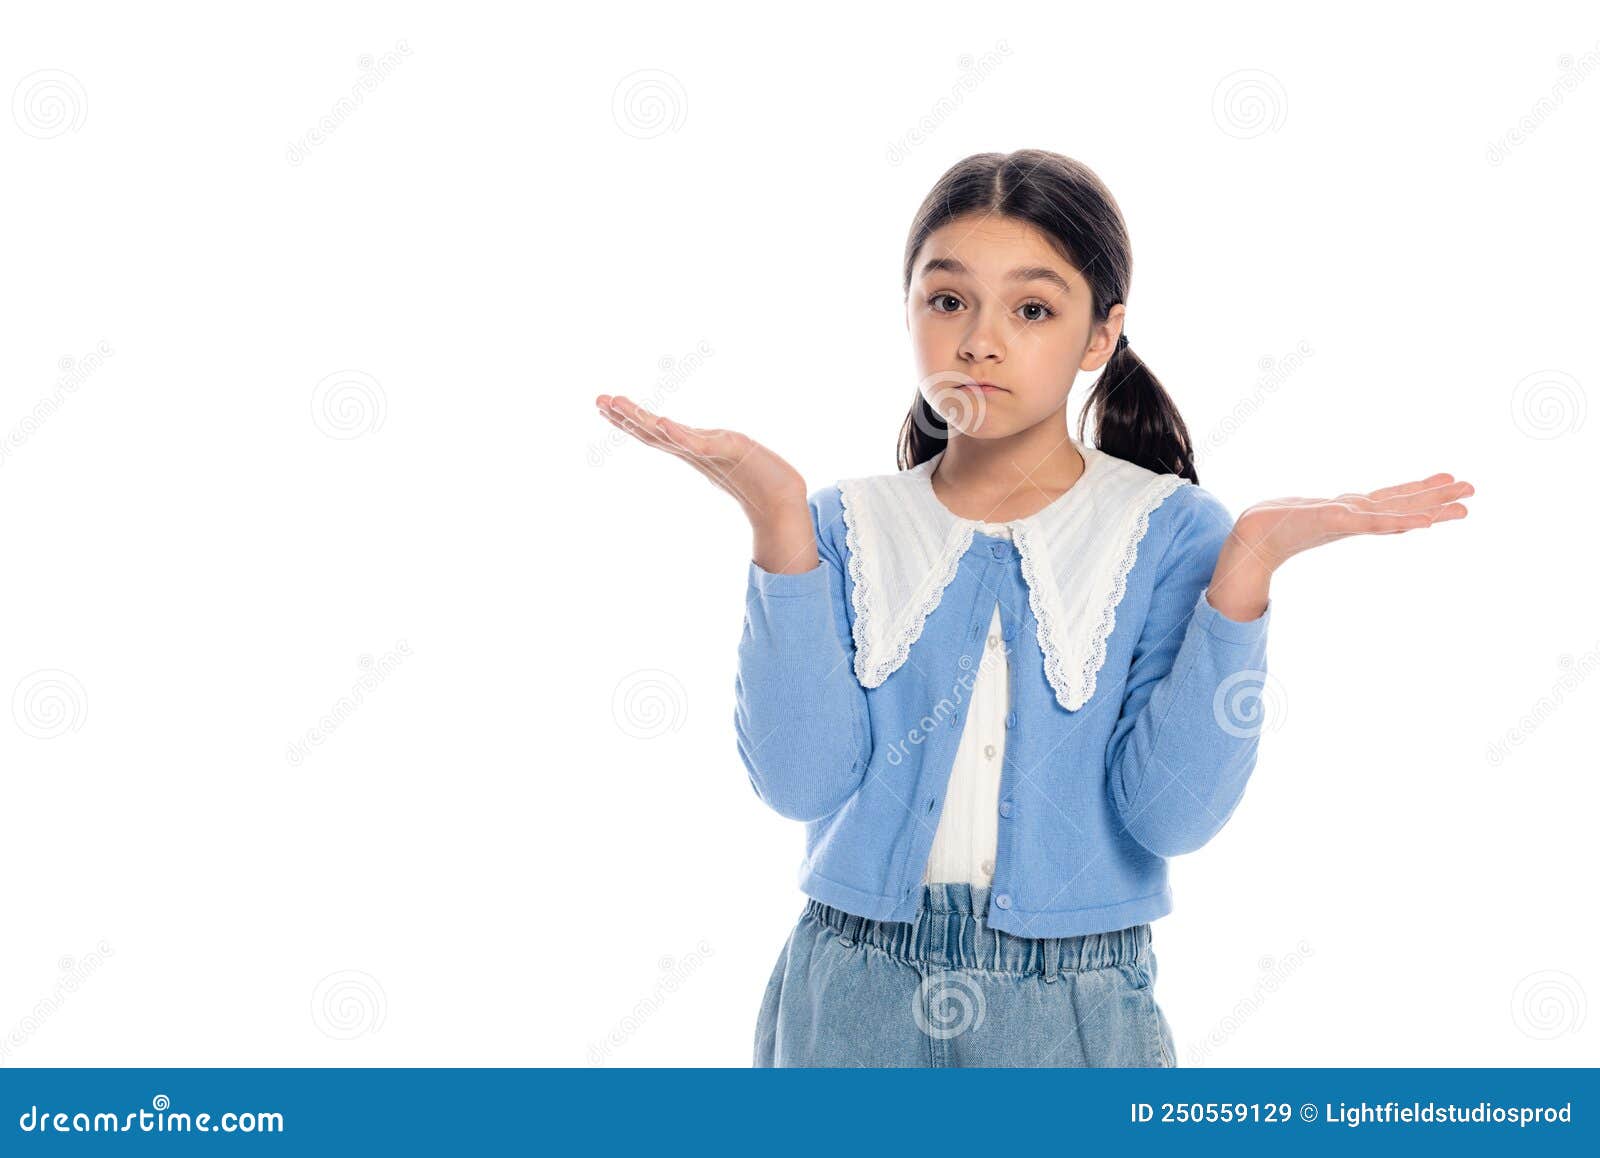 Confused Babegirl Showing Shrug Gesture Isolated Stock Image Image Of Dubium Stylish